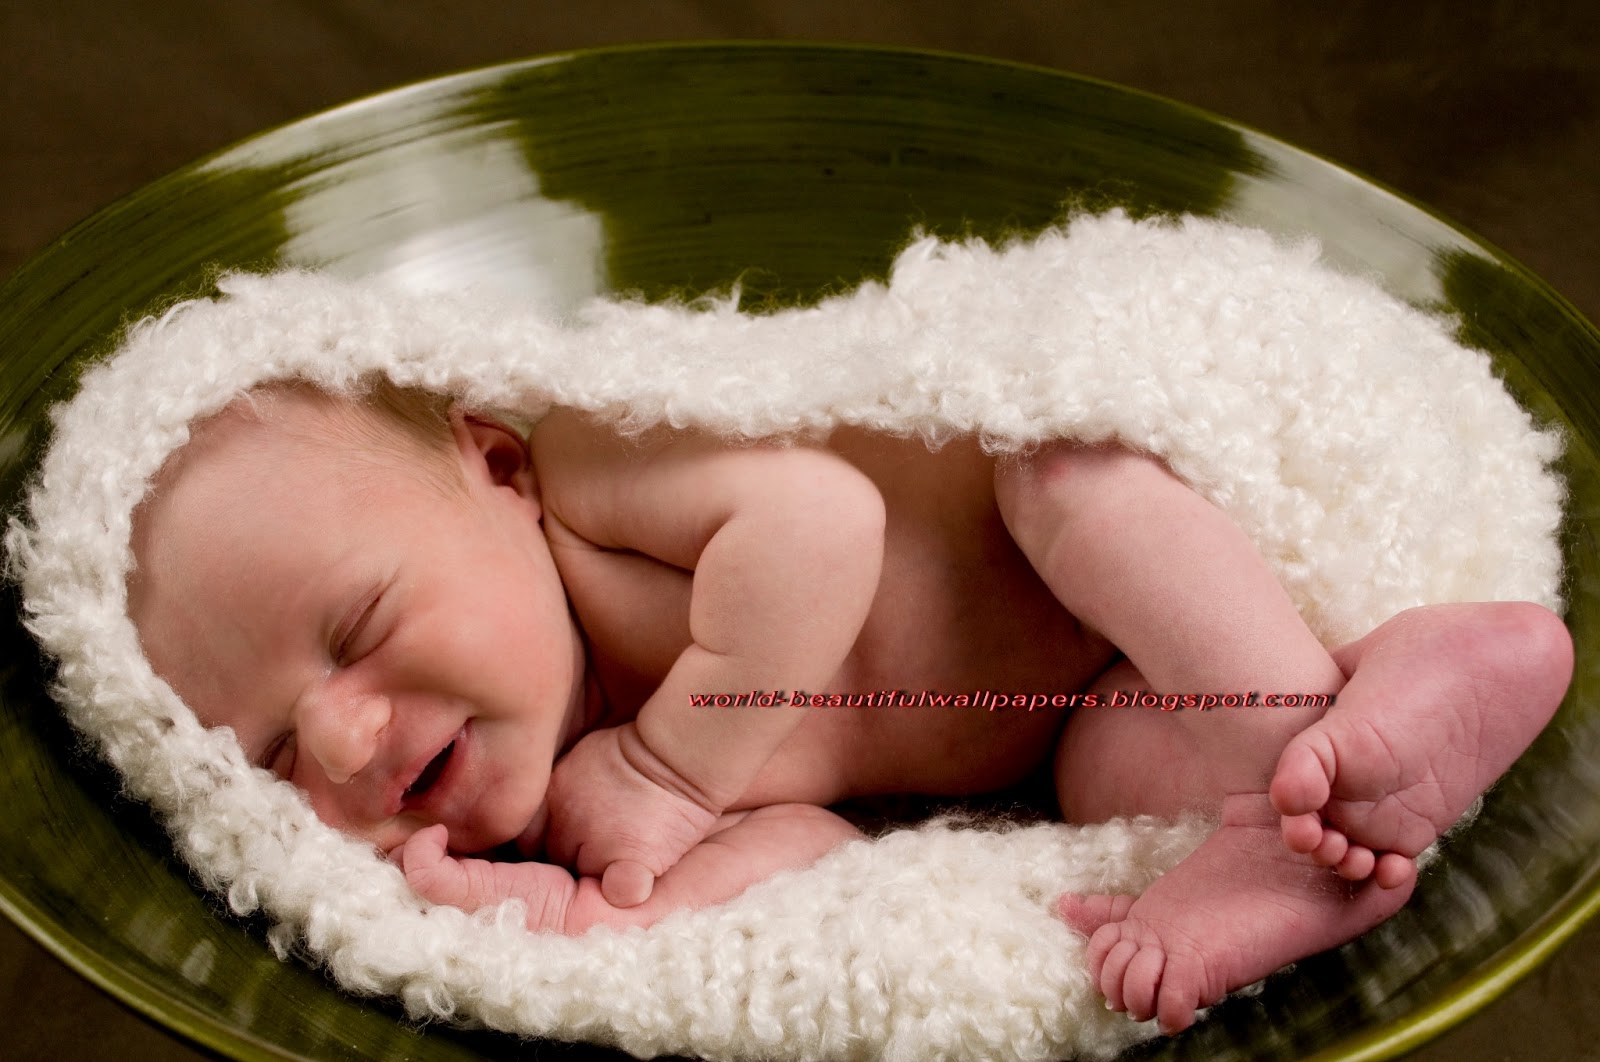 Beautiful Wallpaper Newborn Baby